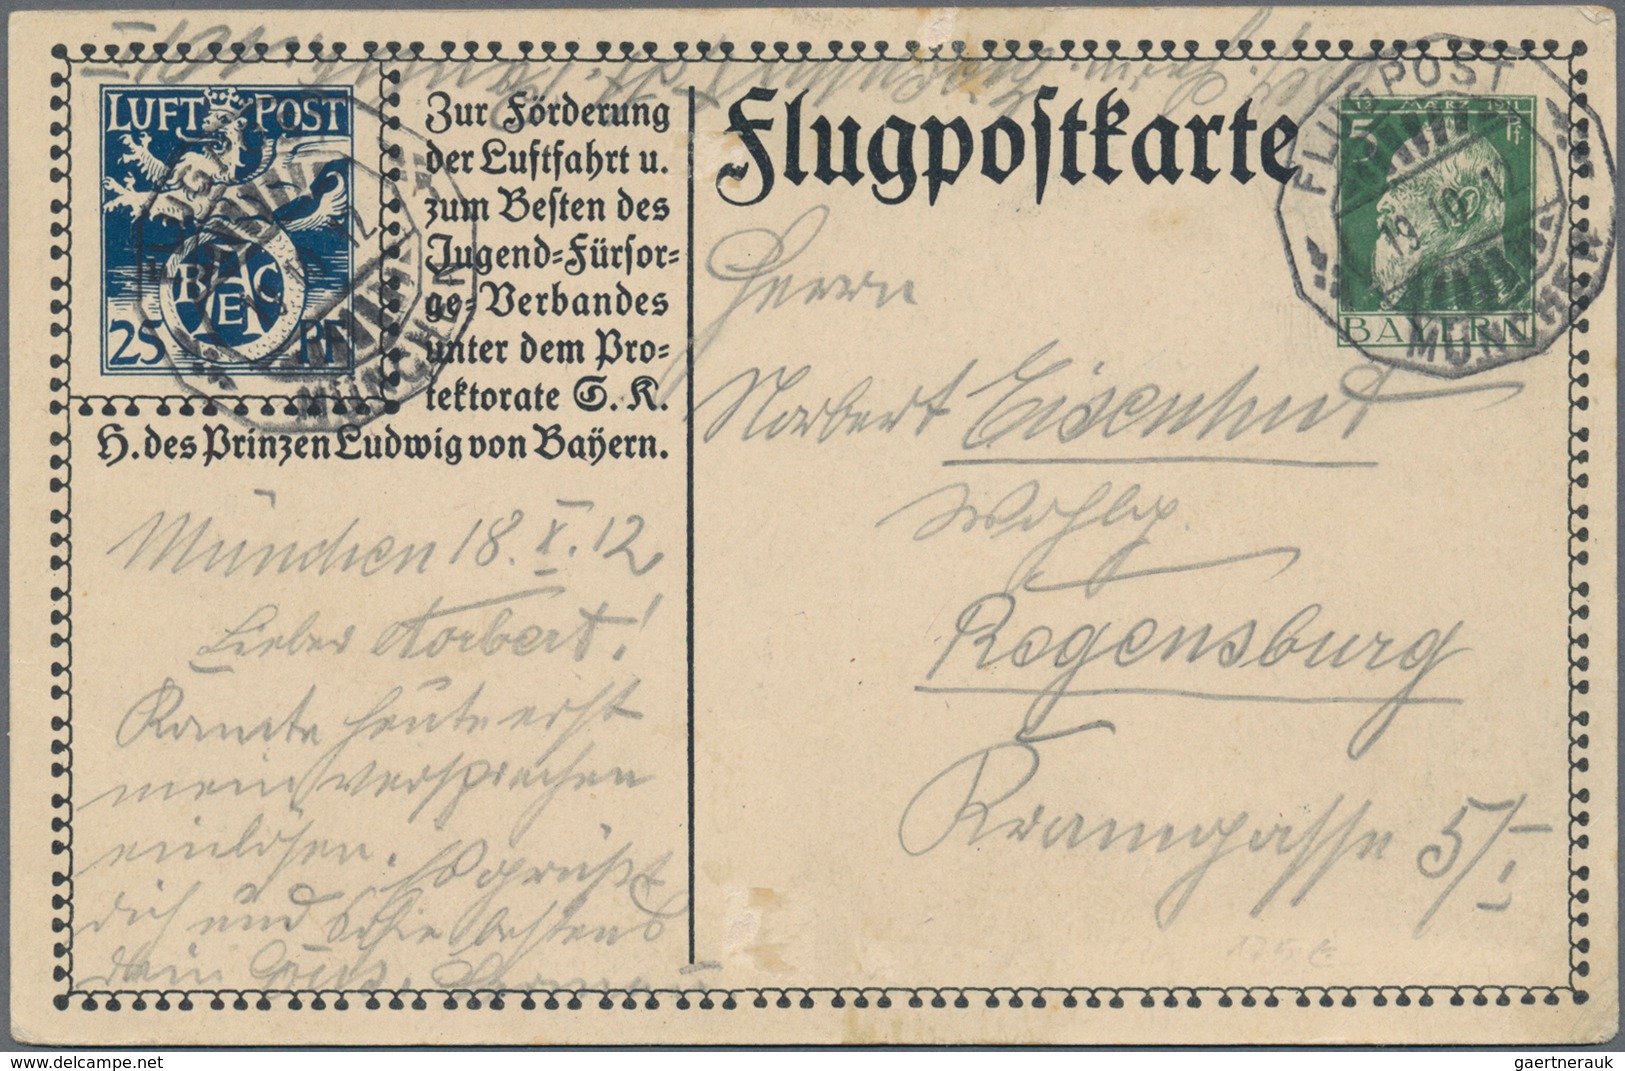 Bayern - Ganzsachen: 1874/1919, vielseitige Partie von ca. 235 bedarfsgebrauchten Ganzsachen mit Tex